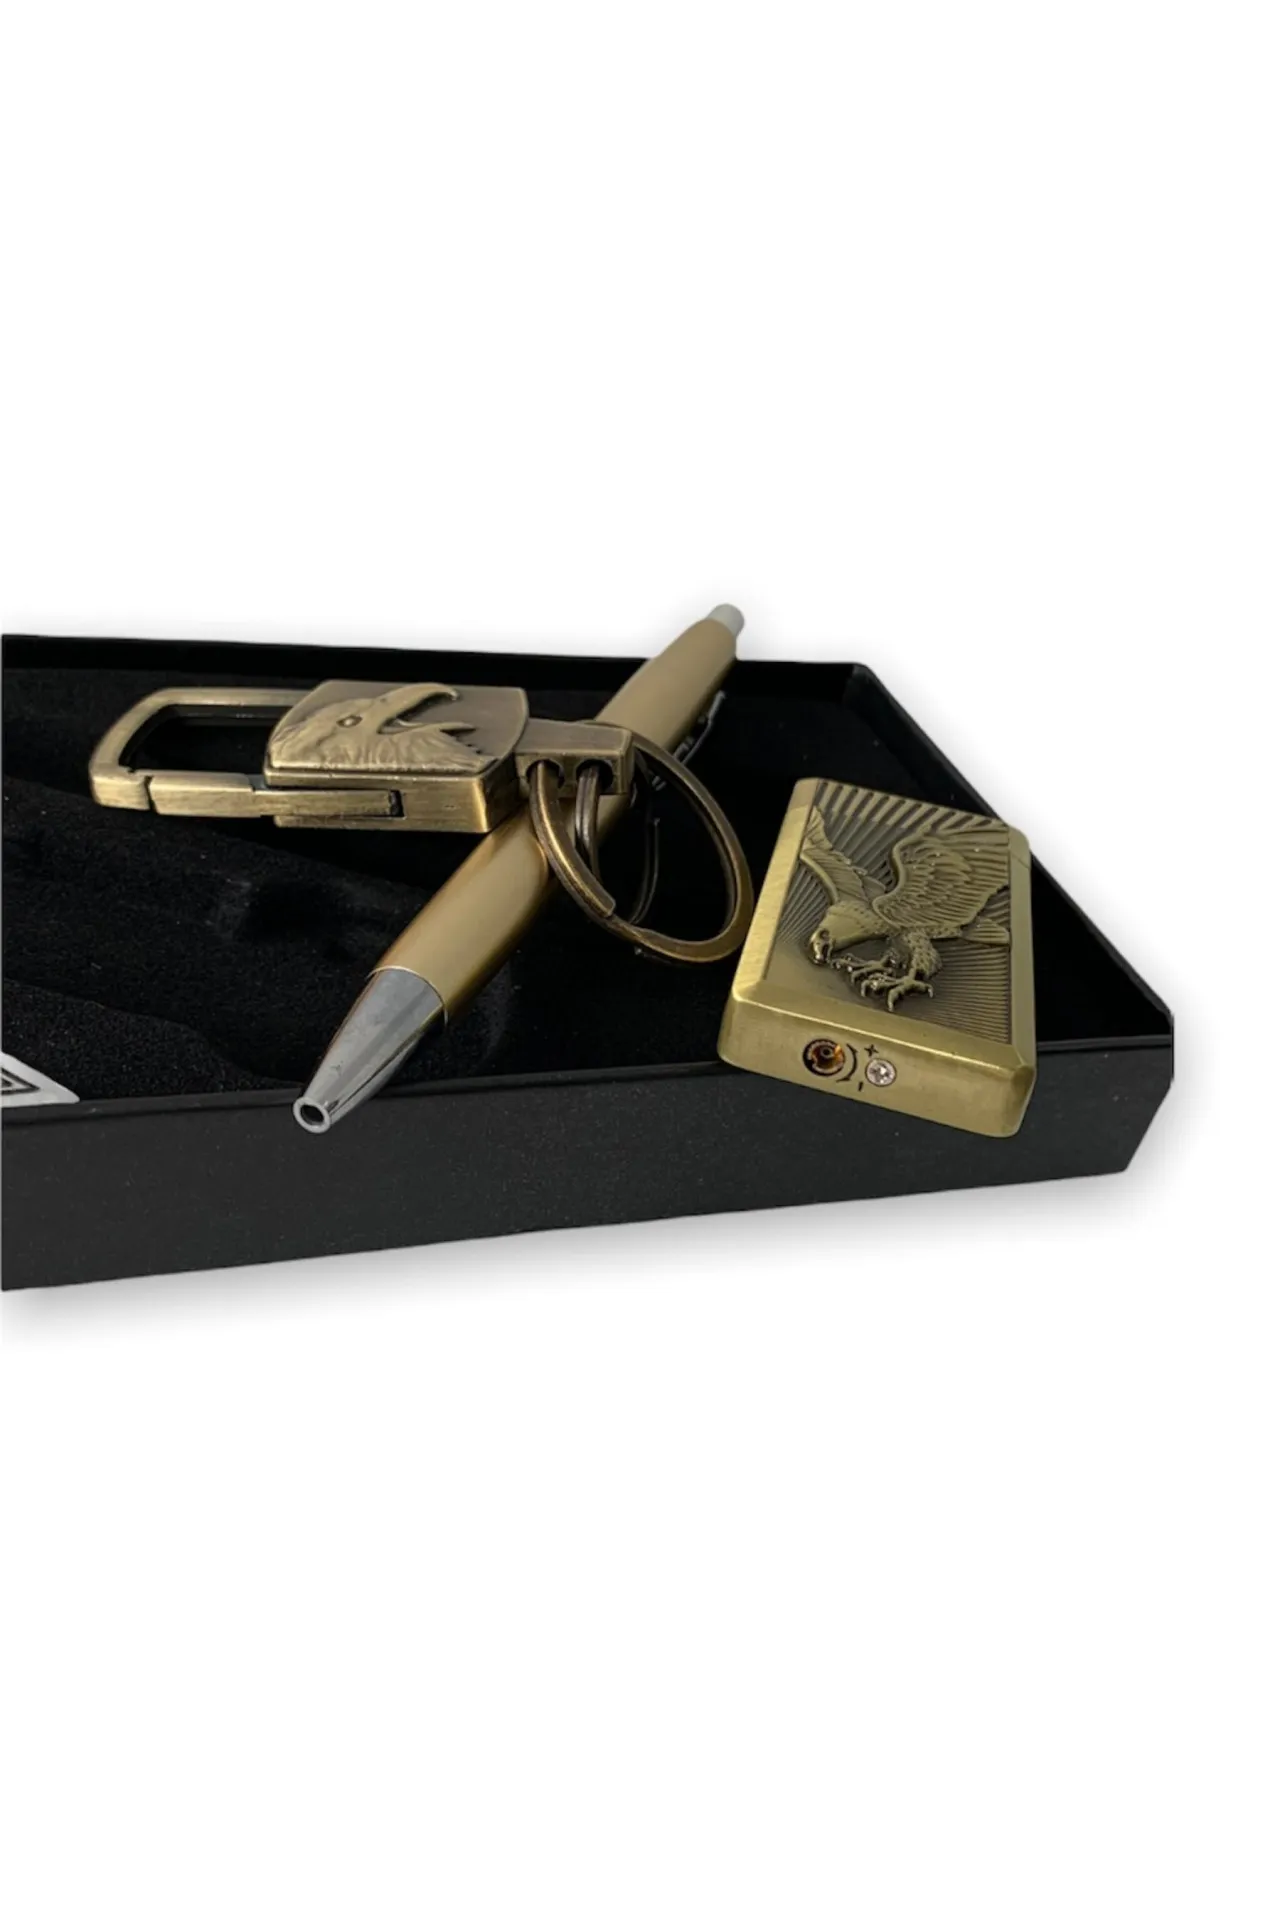 Подарочный набор - брелок, ручка, зажигалка орел a022 SHK Gift#2